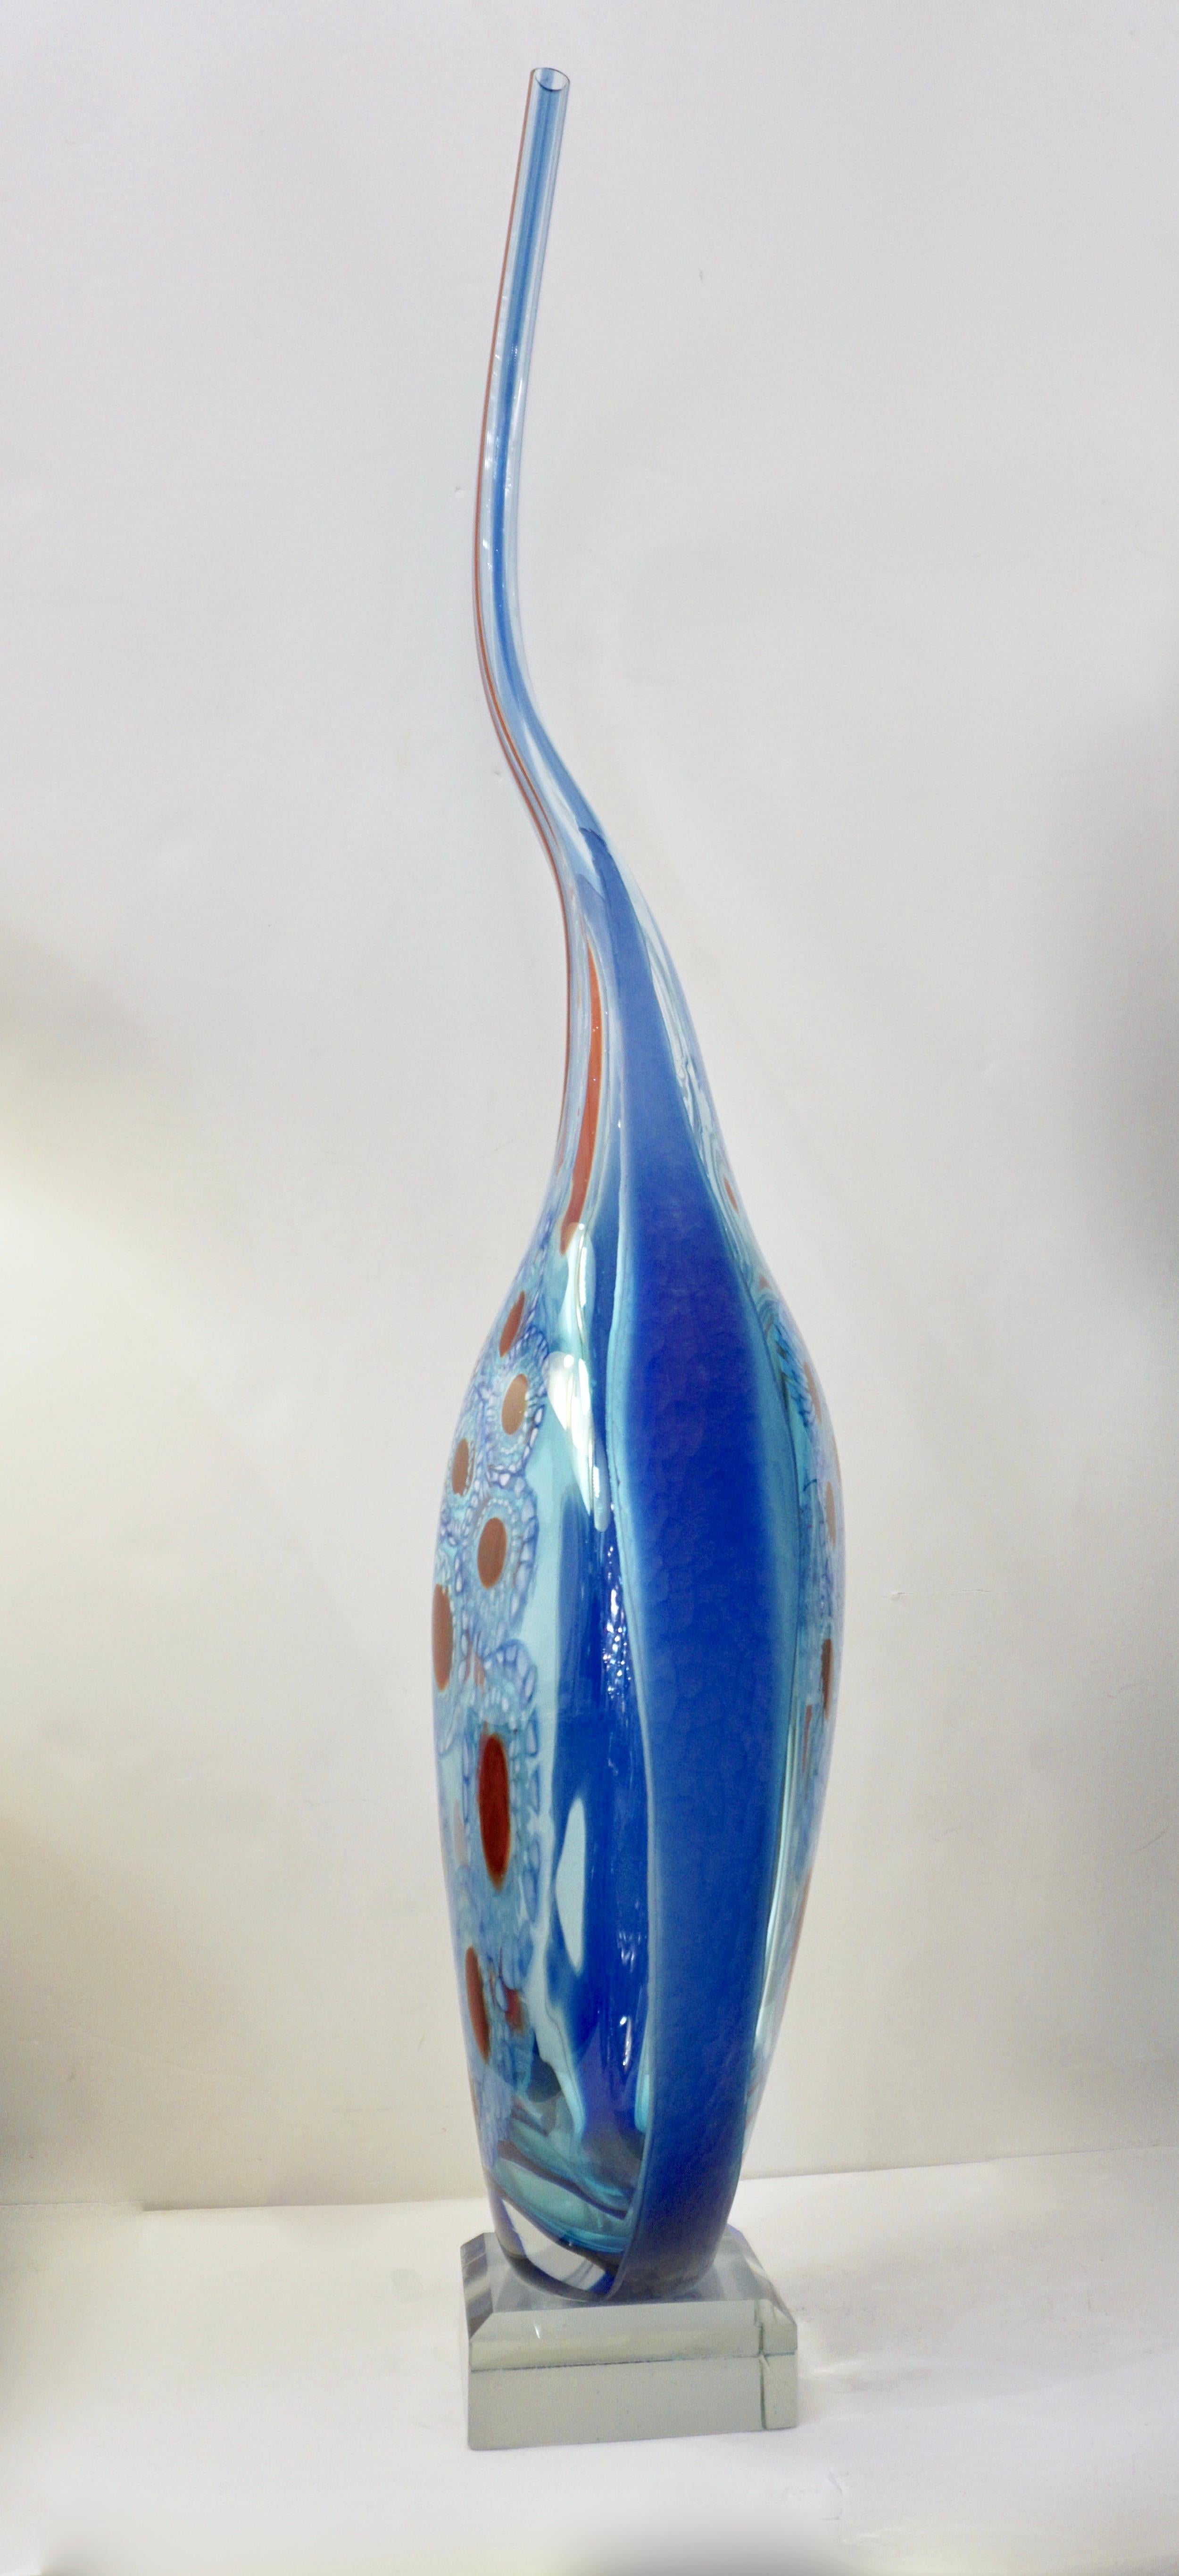 Monumentale Vase aus italienischem Kunstglas, ein einzigartiges Kunstwerk von Davide Donà, signiertes Stück aus geblasenem Muranoglas. Der aquamarinfarbene Körper, der mit blauen Reflexen getönt ist, wird durch die Überlagerung von